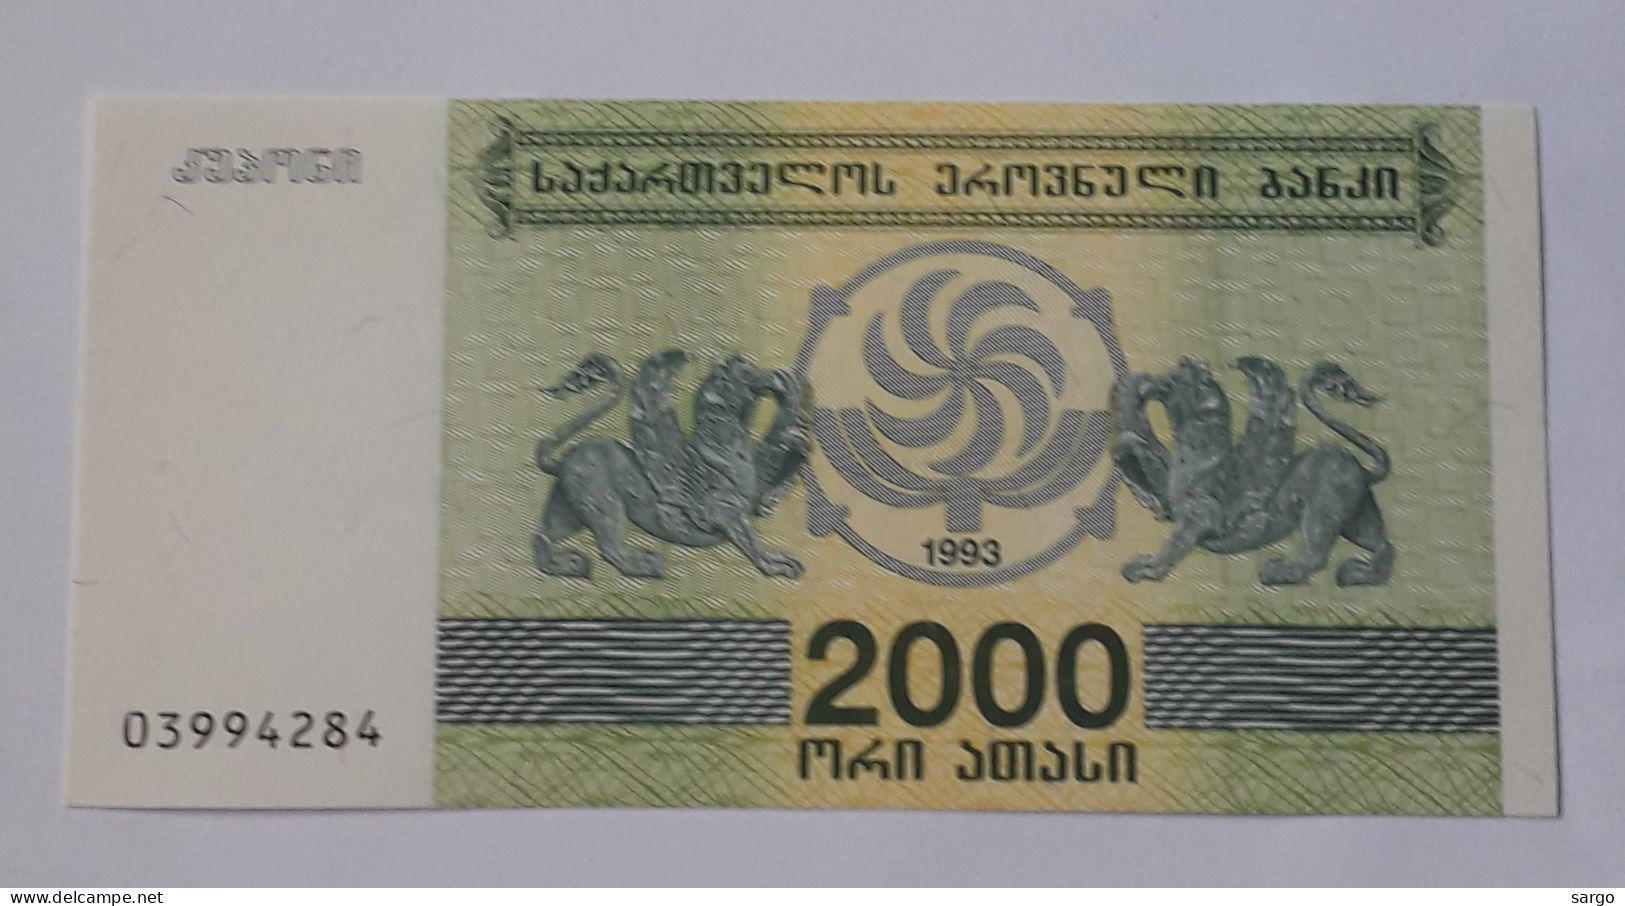 GEORGIA - 2.000 LARIS - 1993  - P 44 - UNC - BANKNOTES - PAPER MONEY - CARTAMONETA - - Georgien